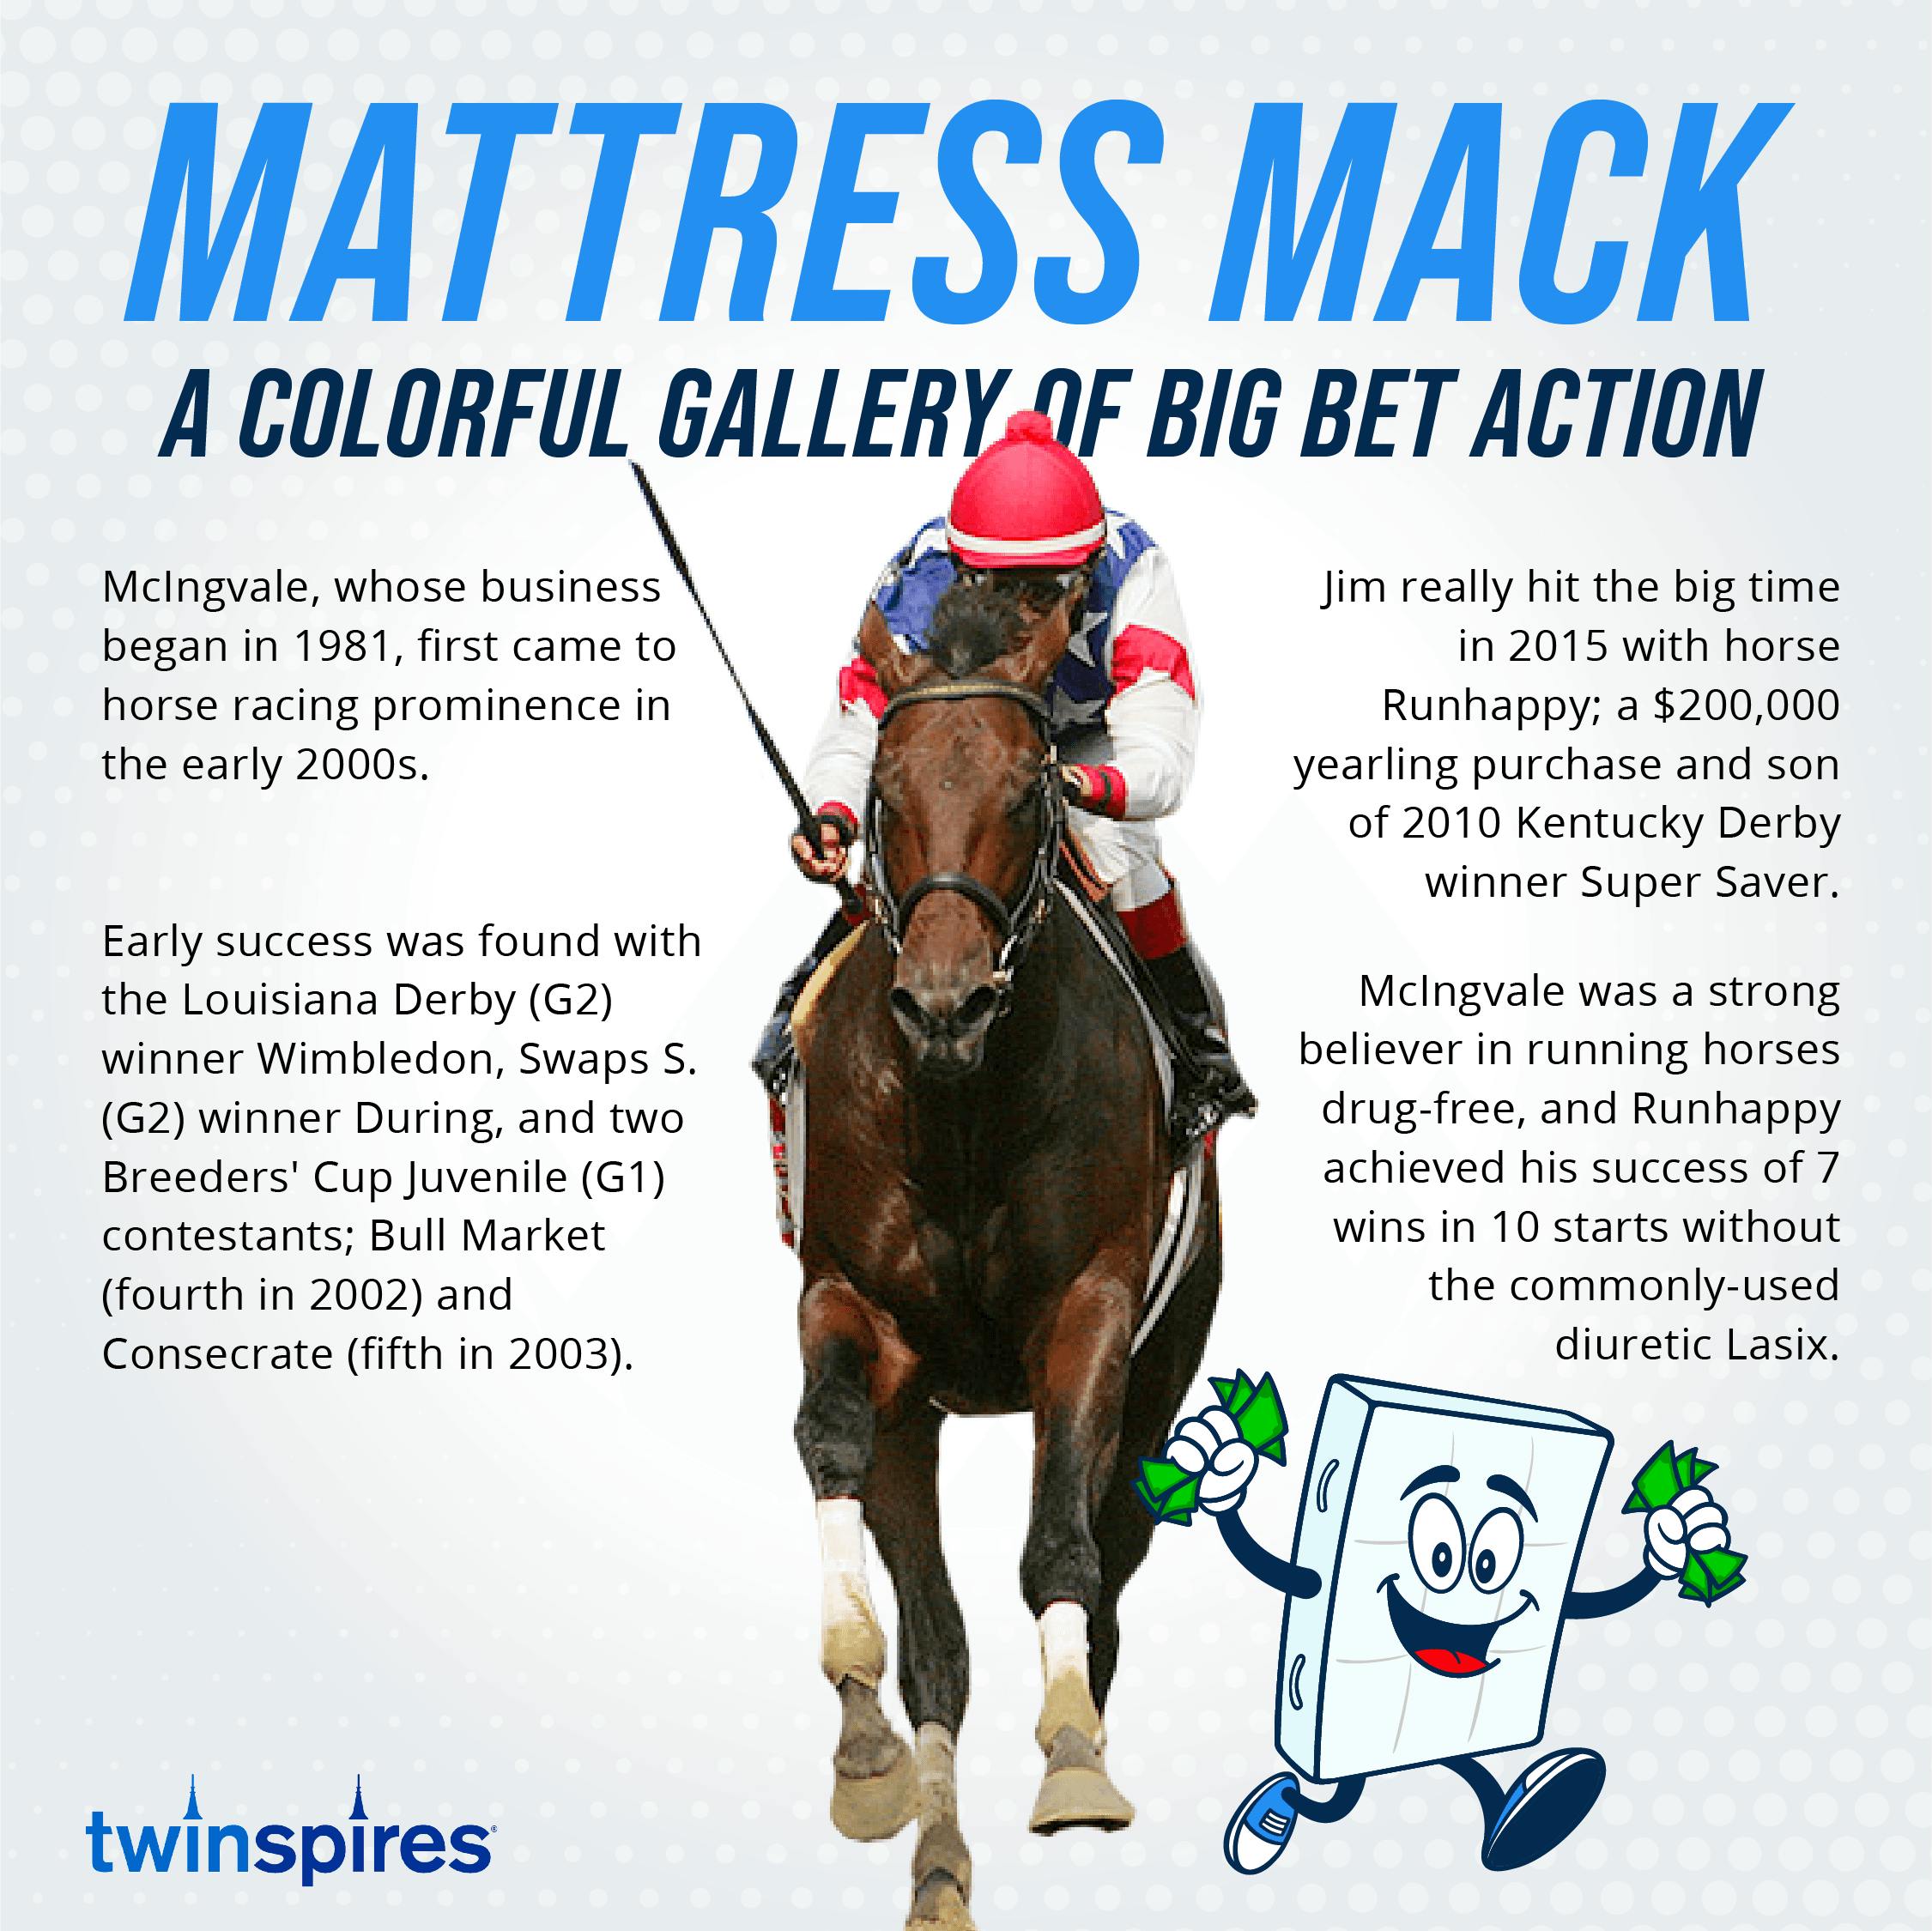 Mattress Mack World Series bets could net him $75 million